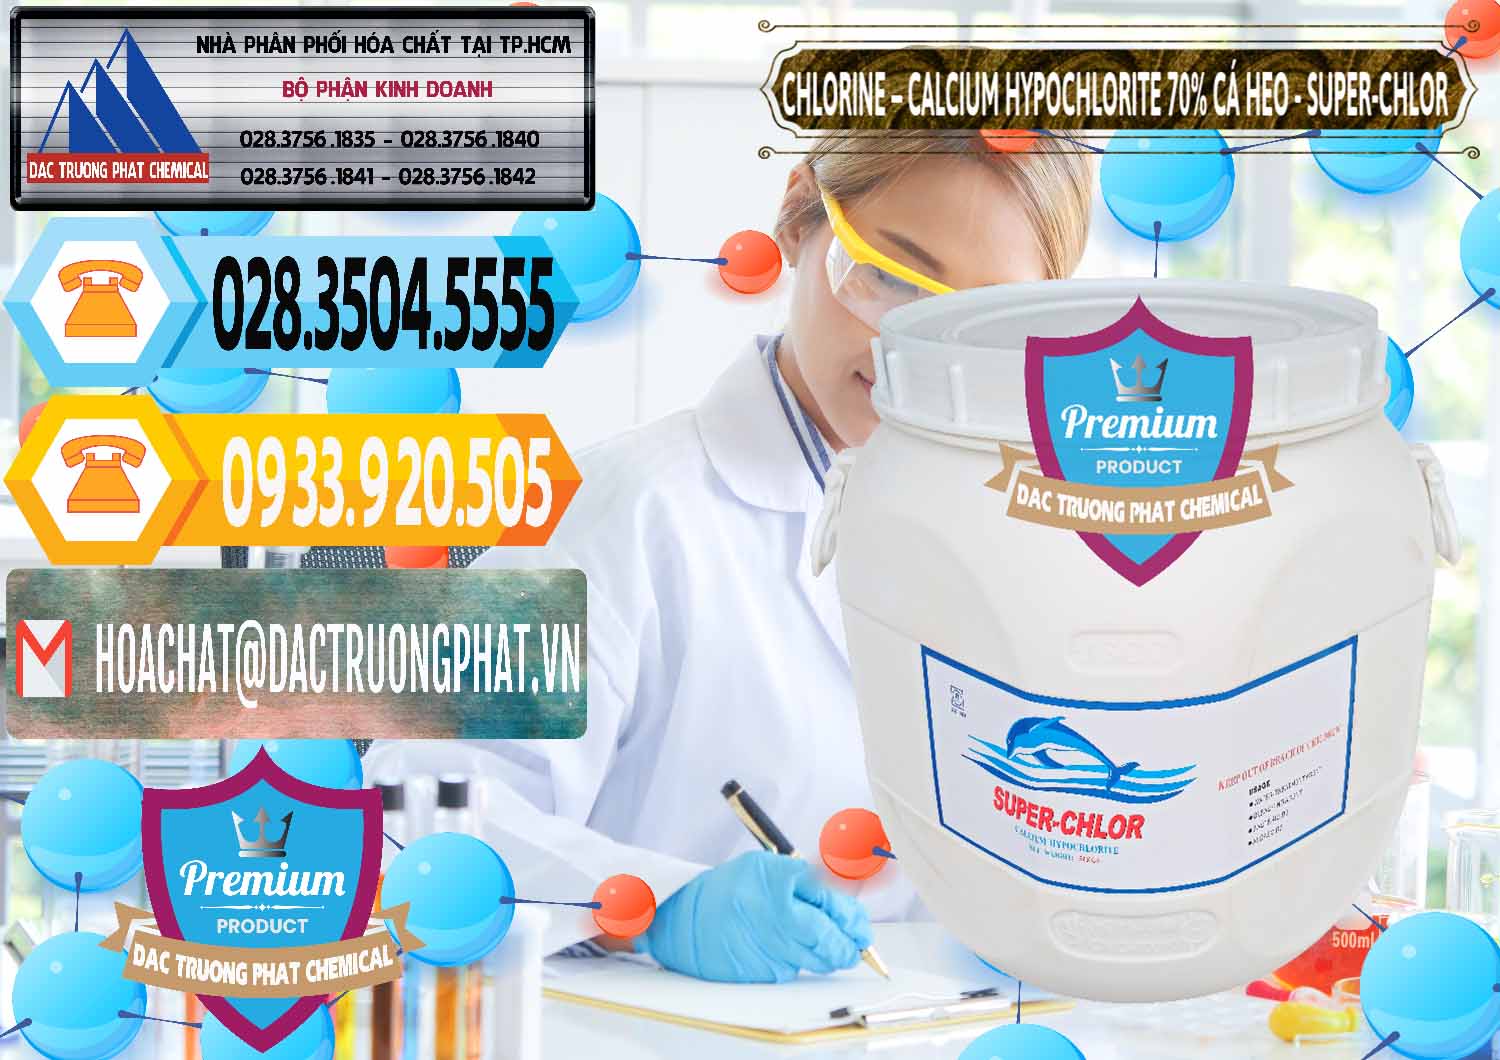 Cung cấp - bán Clorin - Chlorine Cá Heo 70% Super Chlor Trung Quốc China - 0058 - Cty chuyên kinh doanh & cung cấp hóa chất tại TP.HCM - hoachattayrua.net